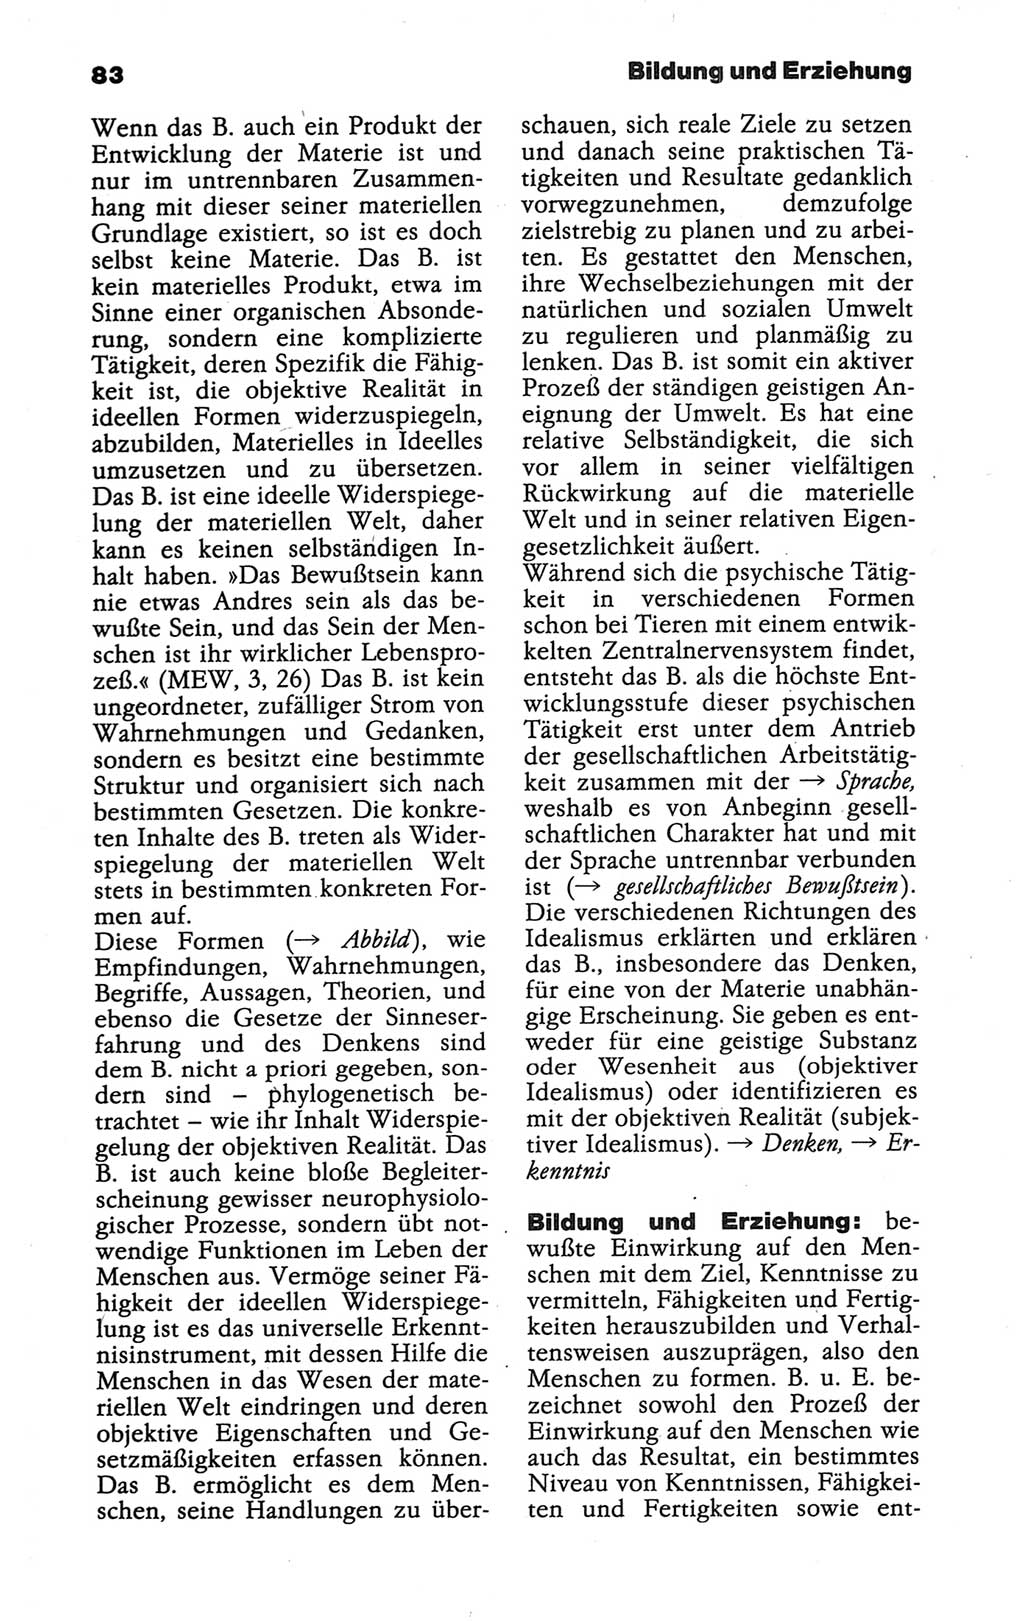 Wörterbuch der marxistisch-leninistischen Philosophie [Deutsche Demokratische Republik (DDR)] 1986, Seite 83 (Wb. ML Phil. DDR 1986, S. 83)